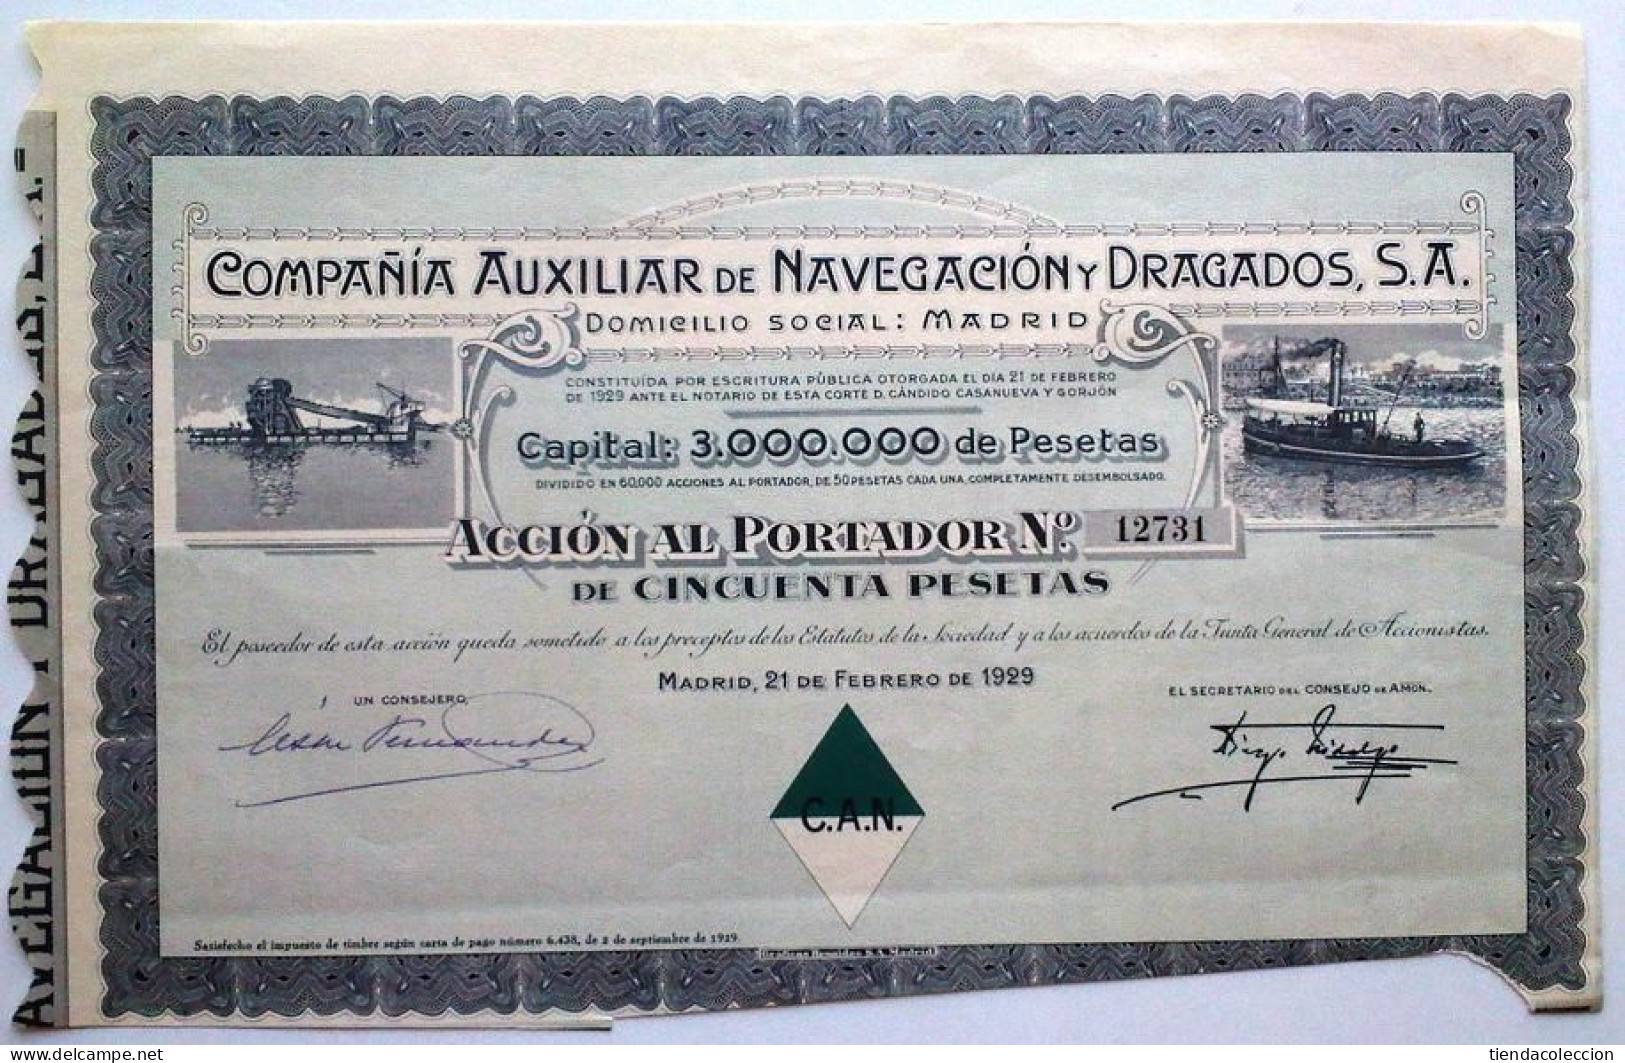 COMPAÑÍA AUXILIAR DE NAVEGACIÓN Y DRAGADOS, S. A. - Navy